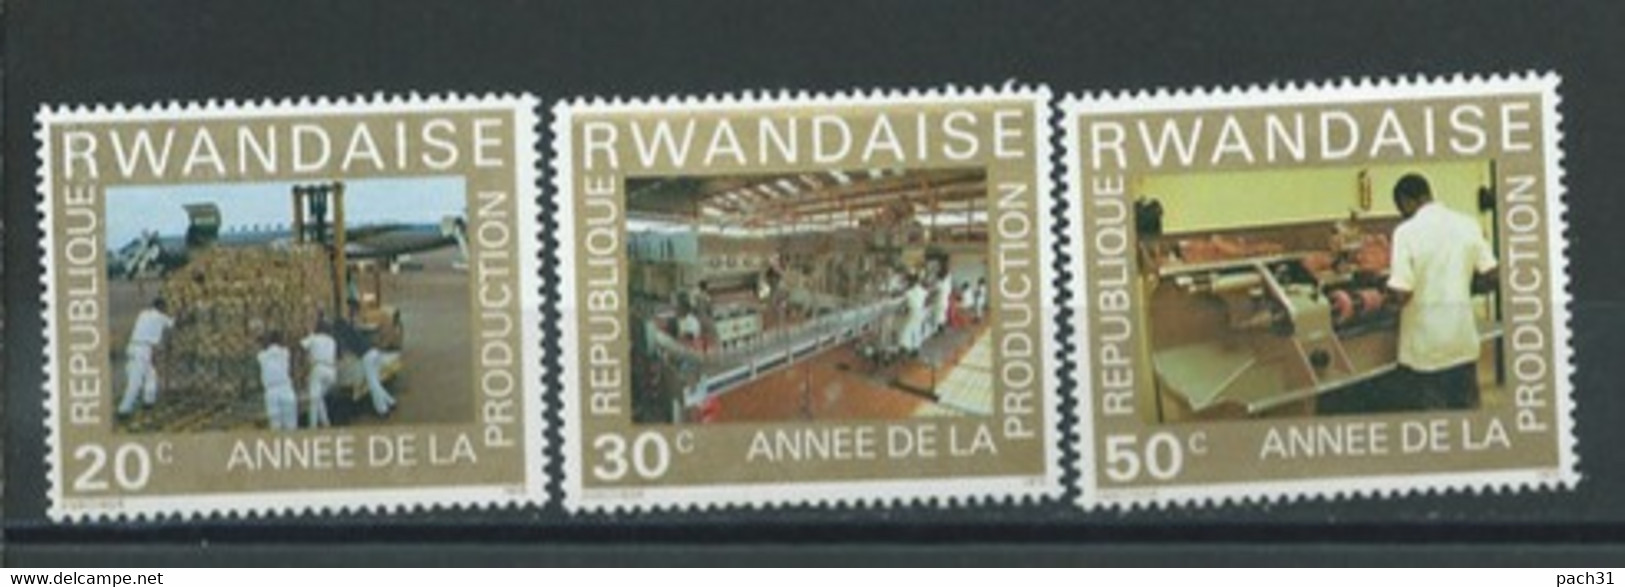 Rwanda  Lot De Timbres   Thème   Année De La Production - Collezioni